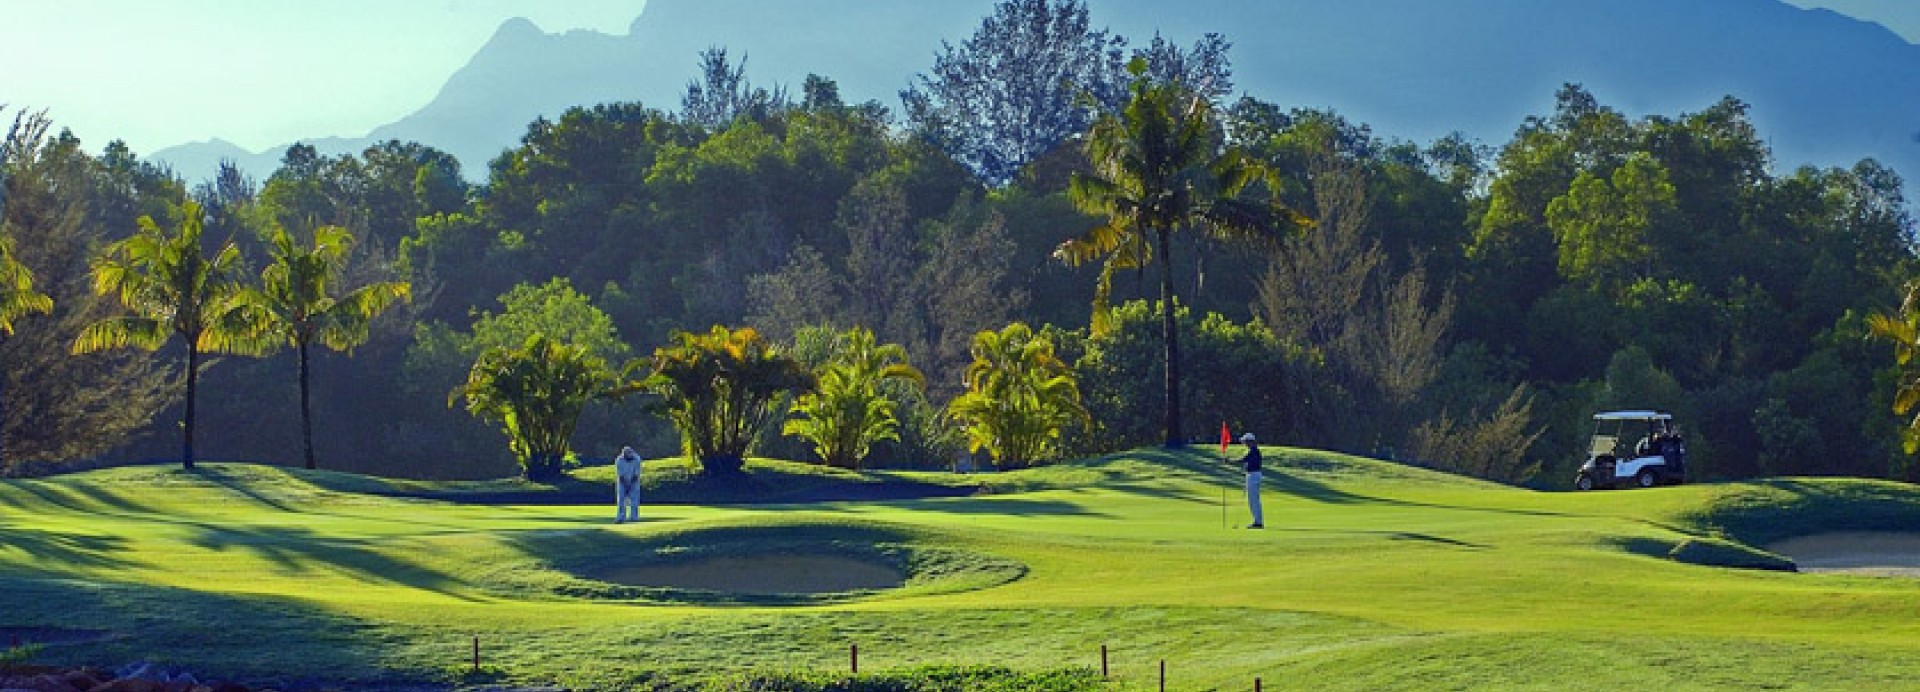 Damai Golf & Country Club  | Golfové zájezdy, golfová dovolená, luxusní golf